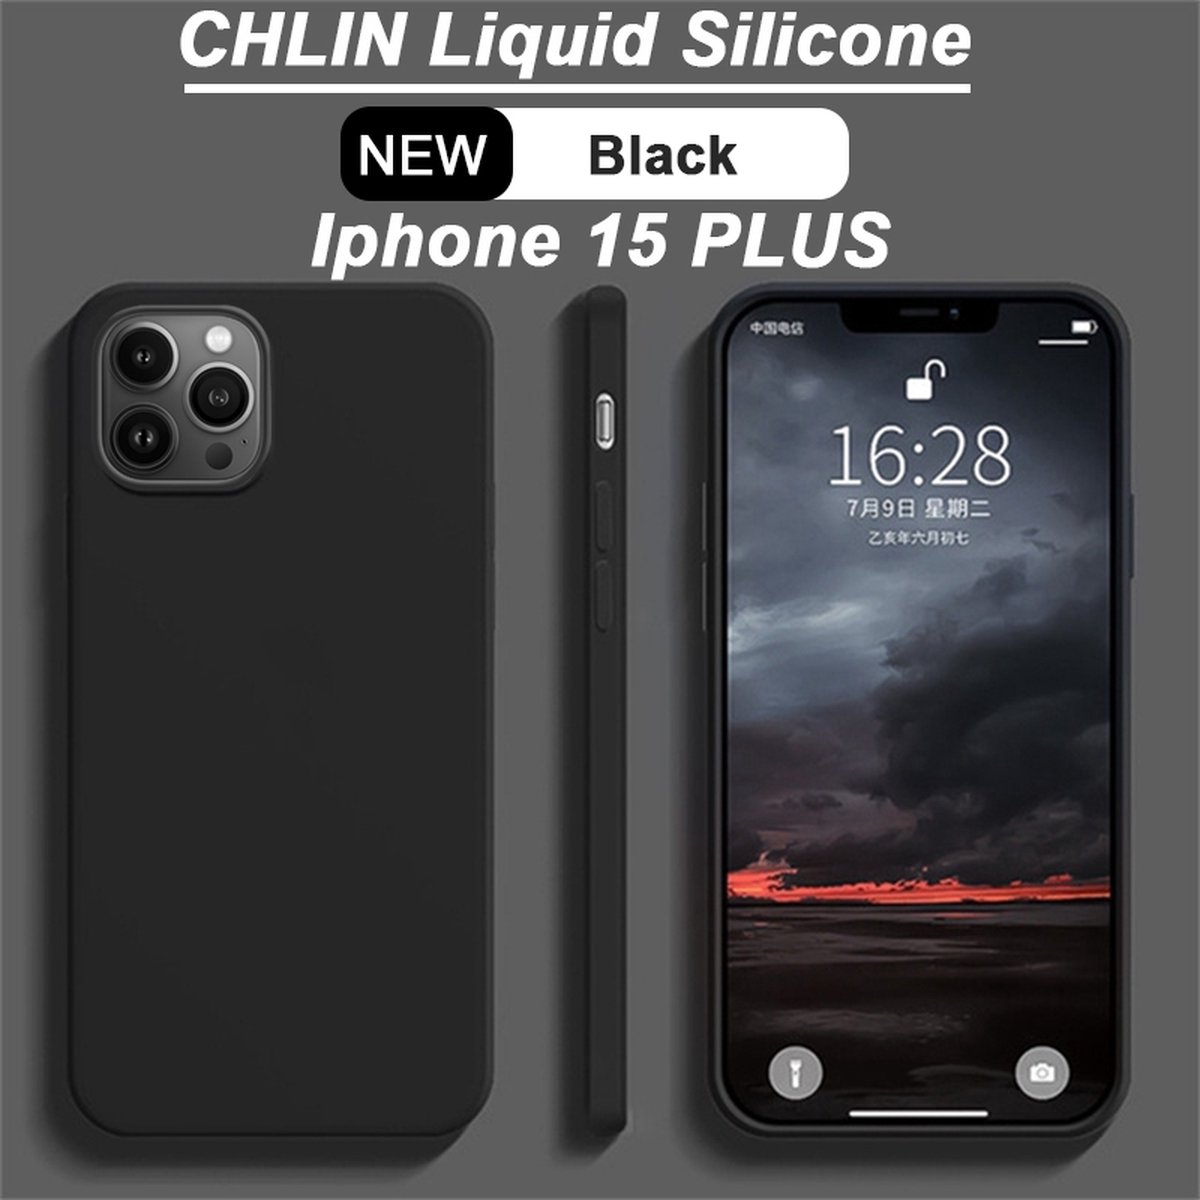 CL CHLIN® Premium Siliconen Case Iphone 15 Plus Zwart - Iphone 15 Plus hoesje - Iphone 15 Plus case - Iphone 15 Plus hoes - Silicone hoesje - Iphone 15 Plus protection - Iphone 15 Plus protector.